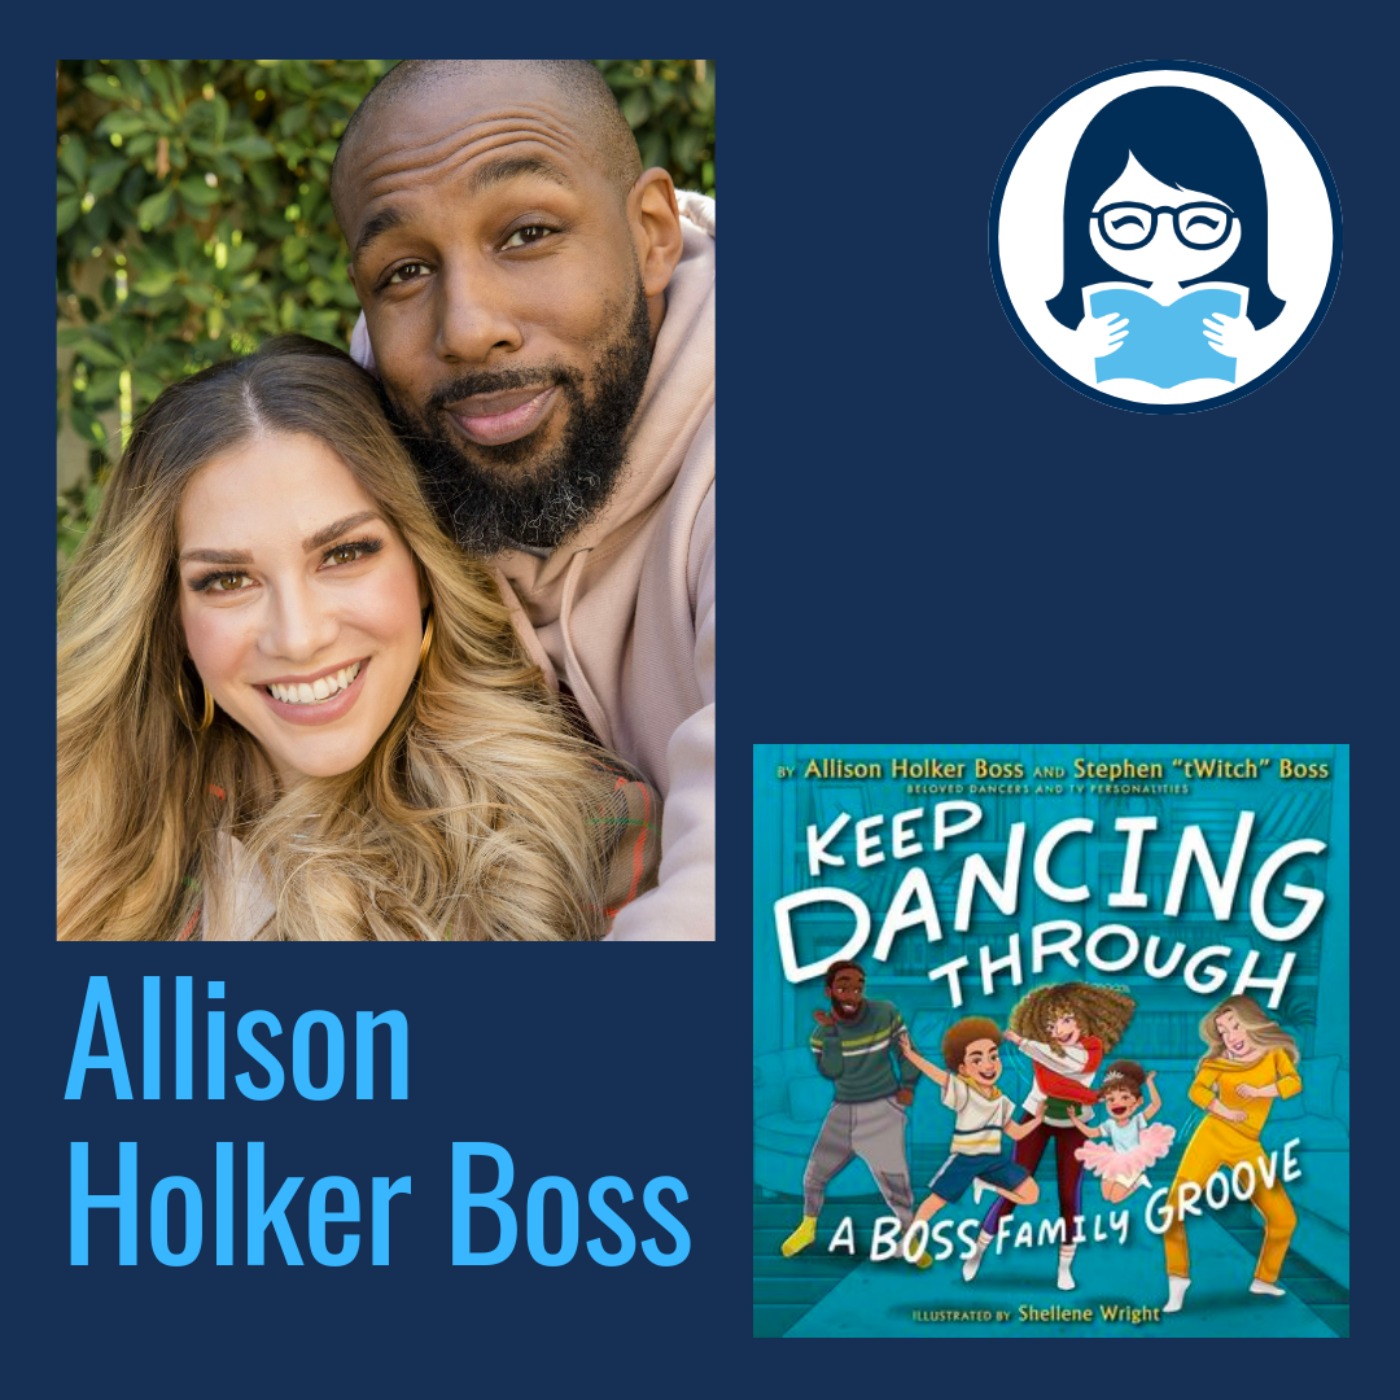 Allison Holker Boss, KEEP DANCING THROUGH: A Boss Family Groove